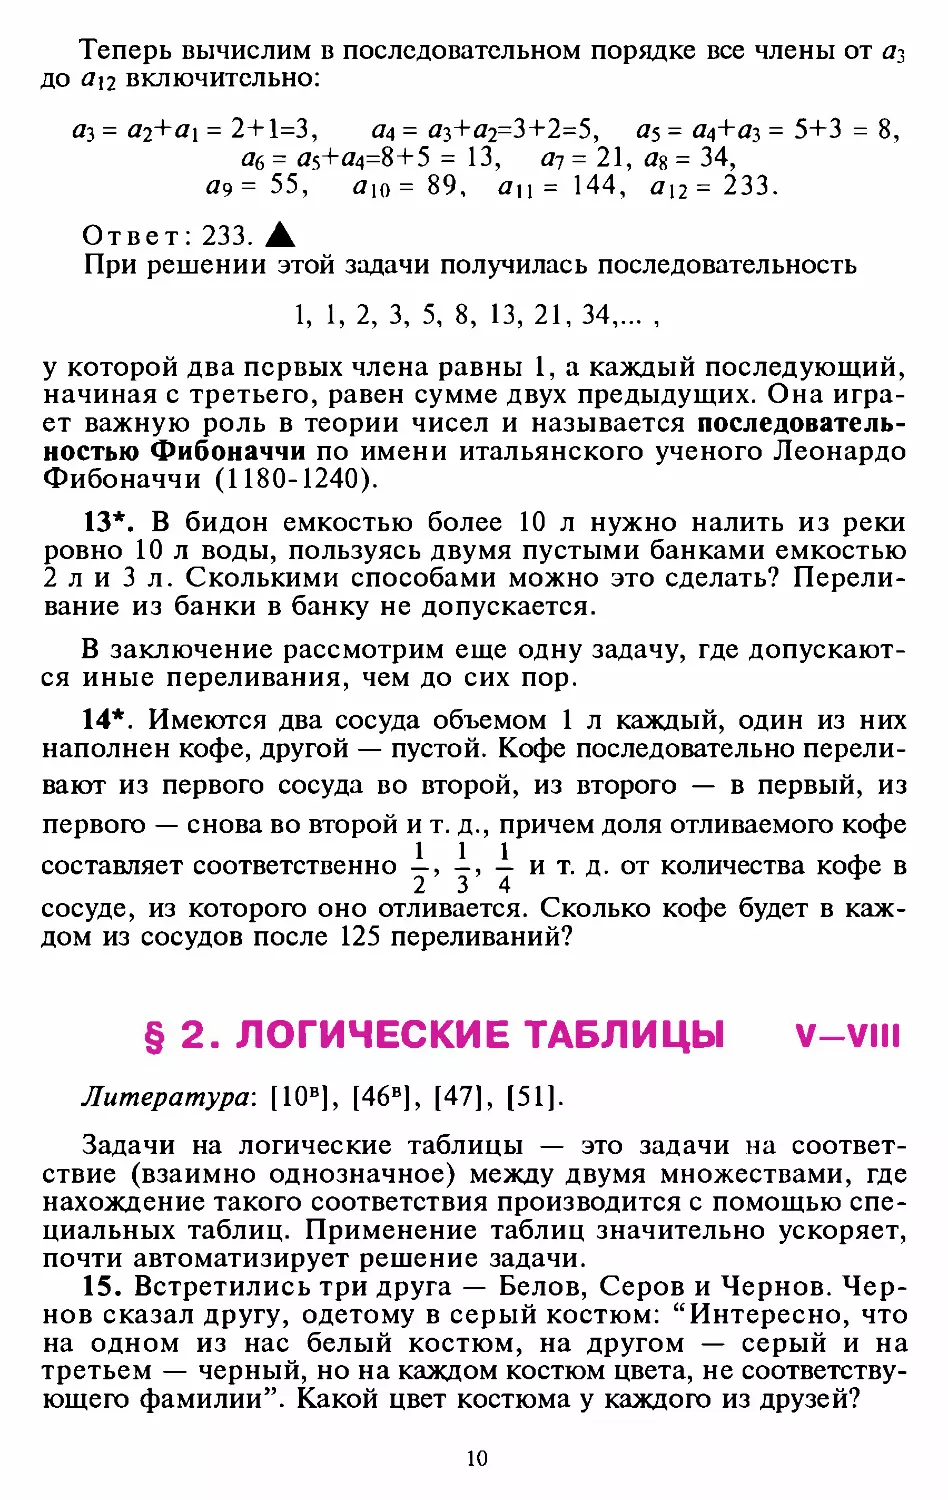 ﻿§2. Логические таблицы øV—VII